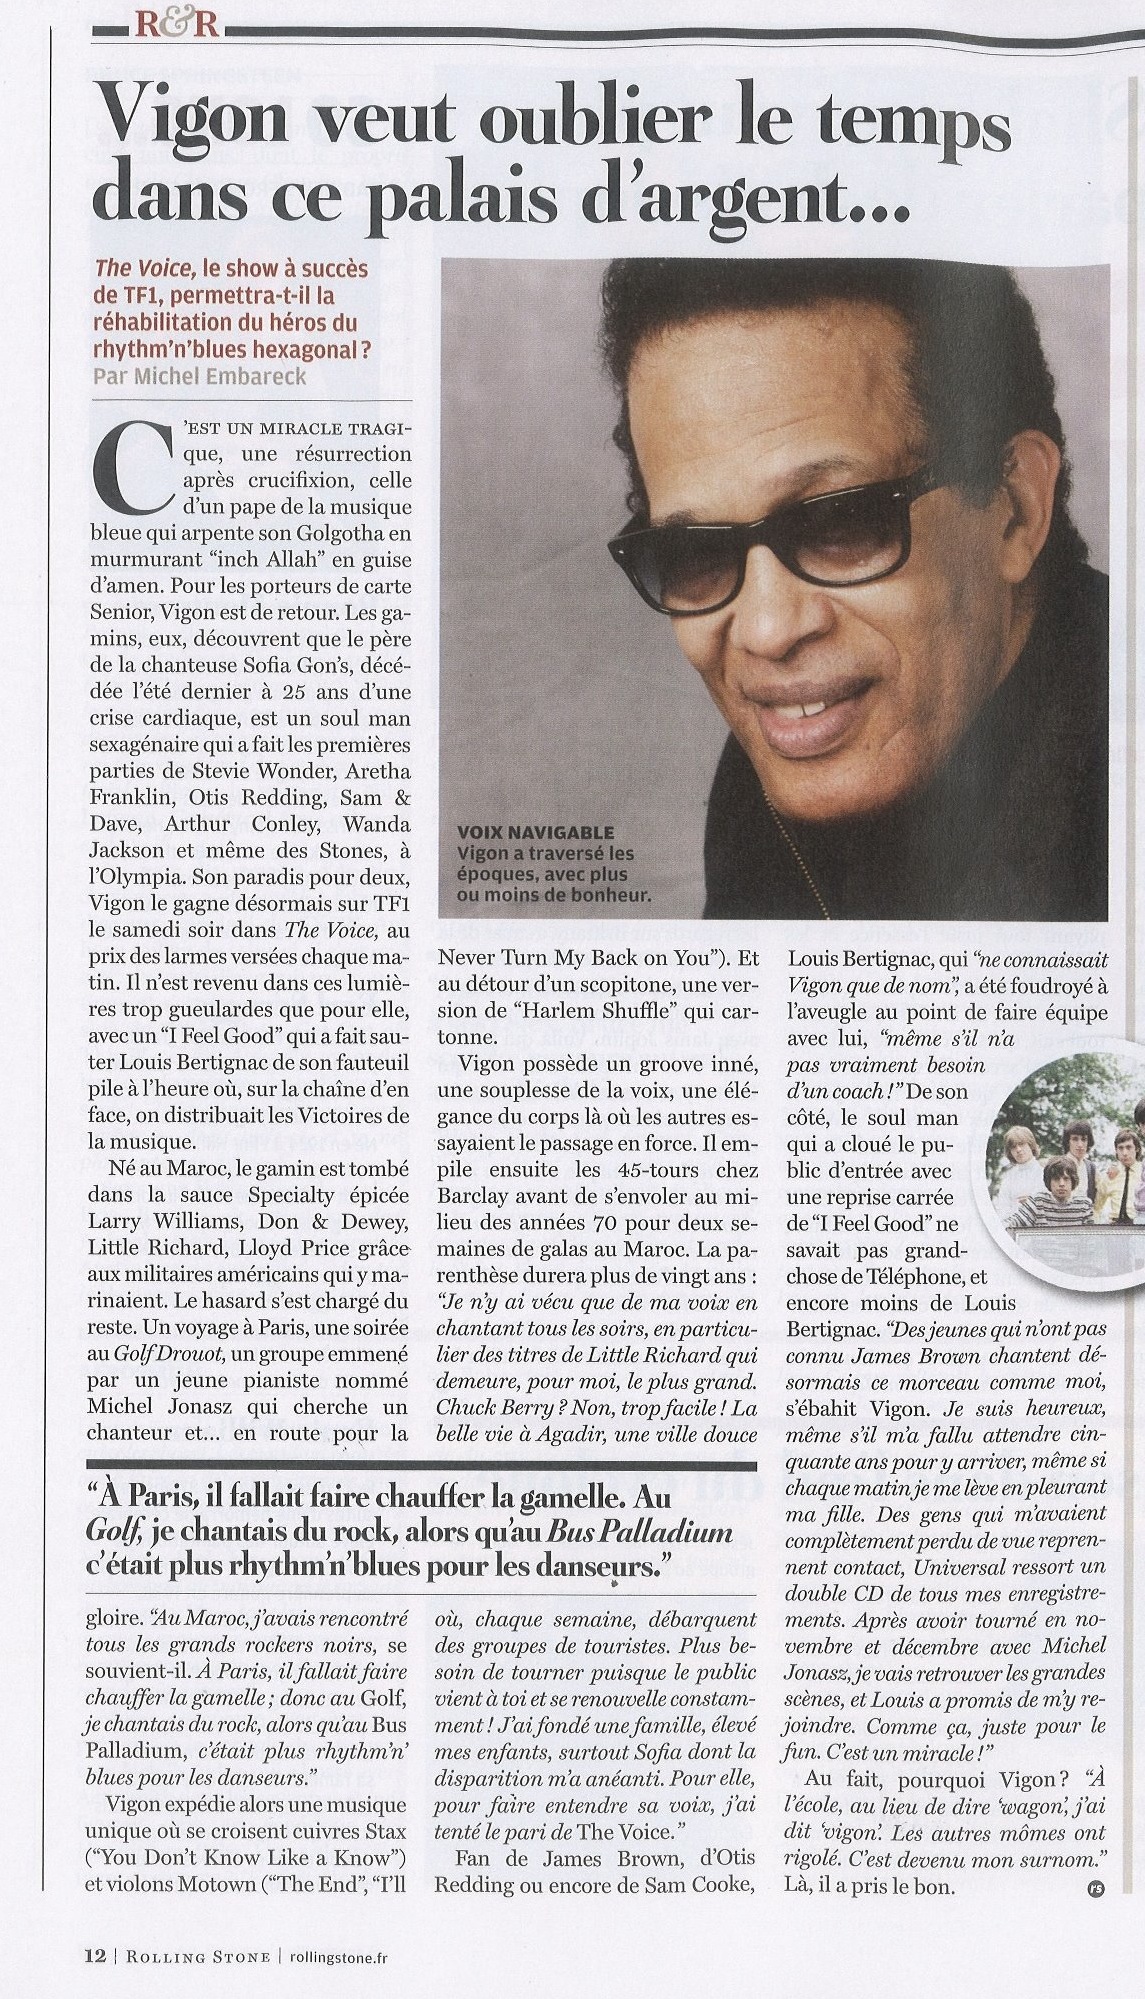 "VIGON, Papa soul" (4e de couverture de "Libération", 14 avril 2012) 1204250505311423619766935